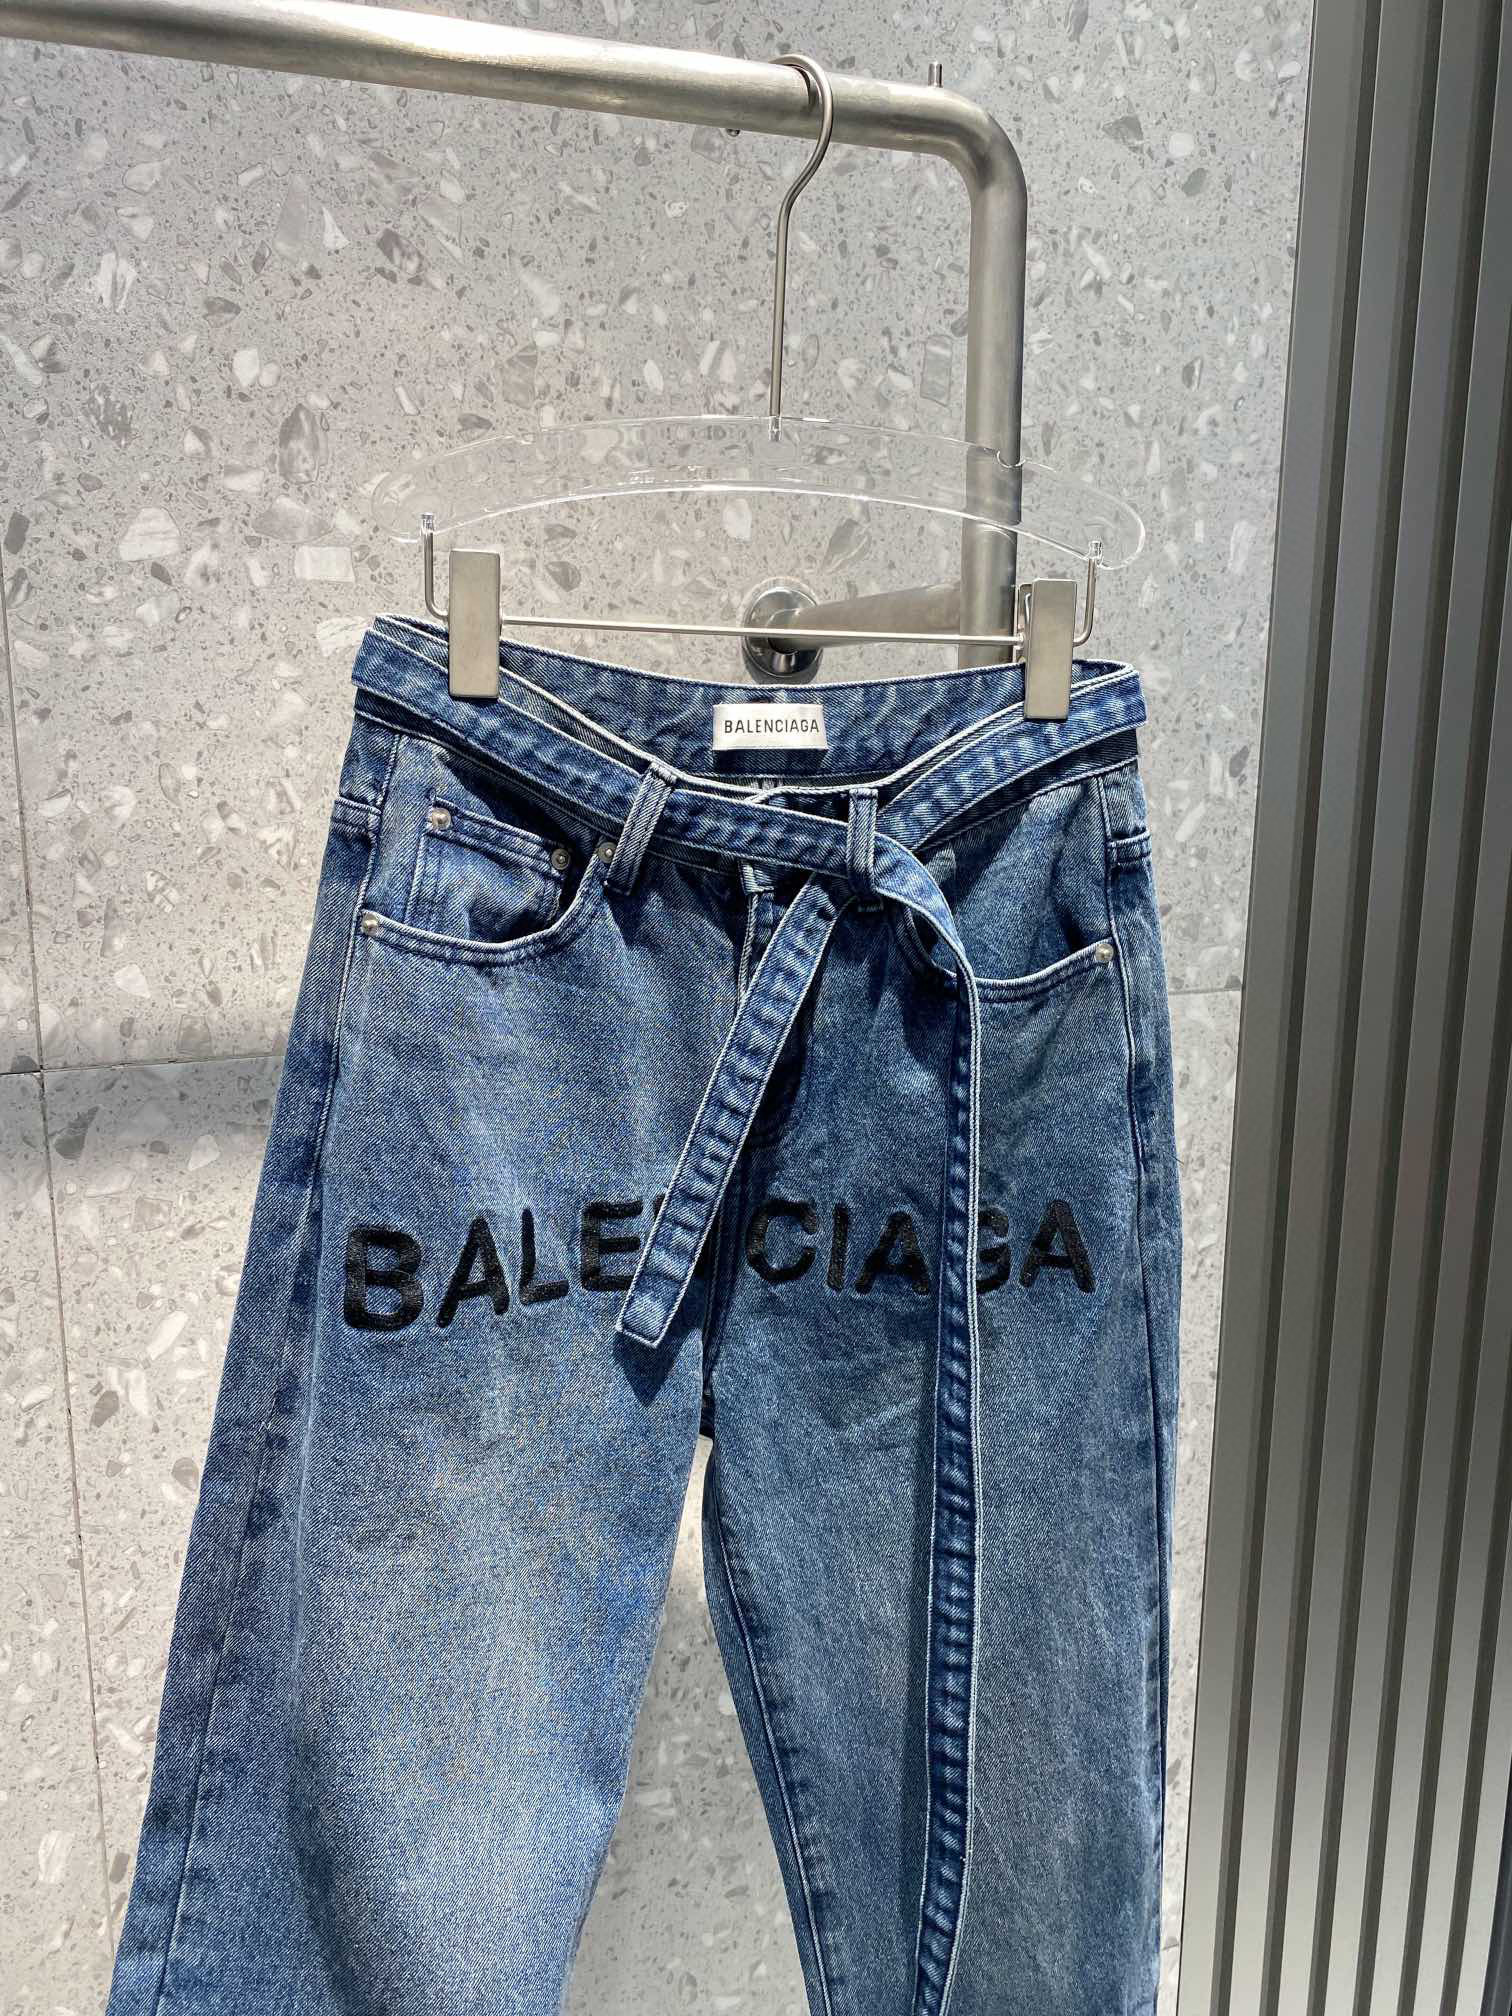 Balenciaga  WideLeg Denim Jeans  Black Balenciaga